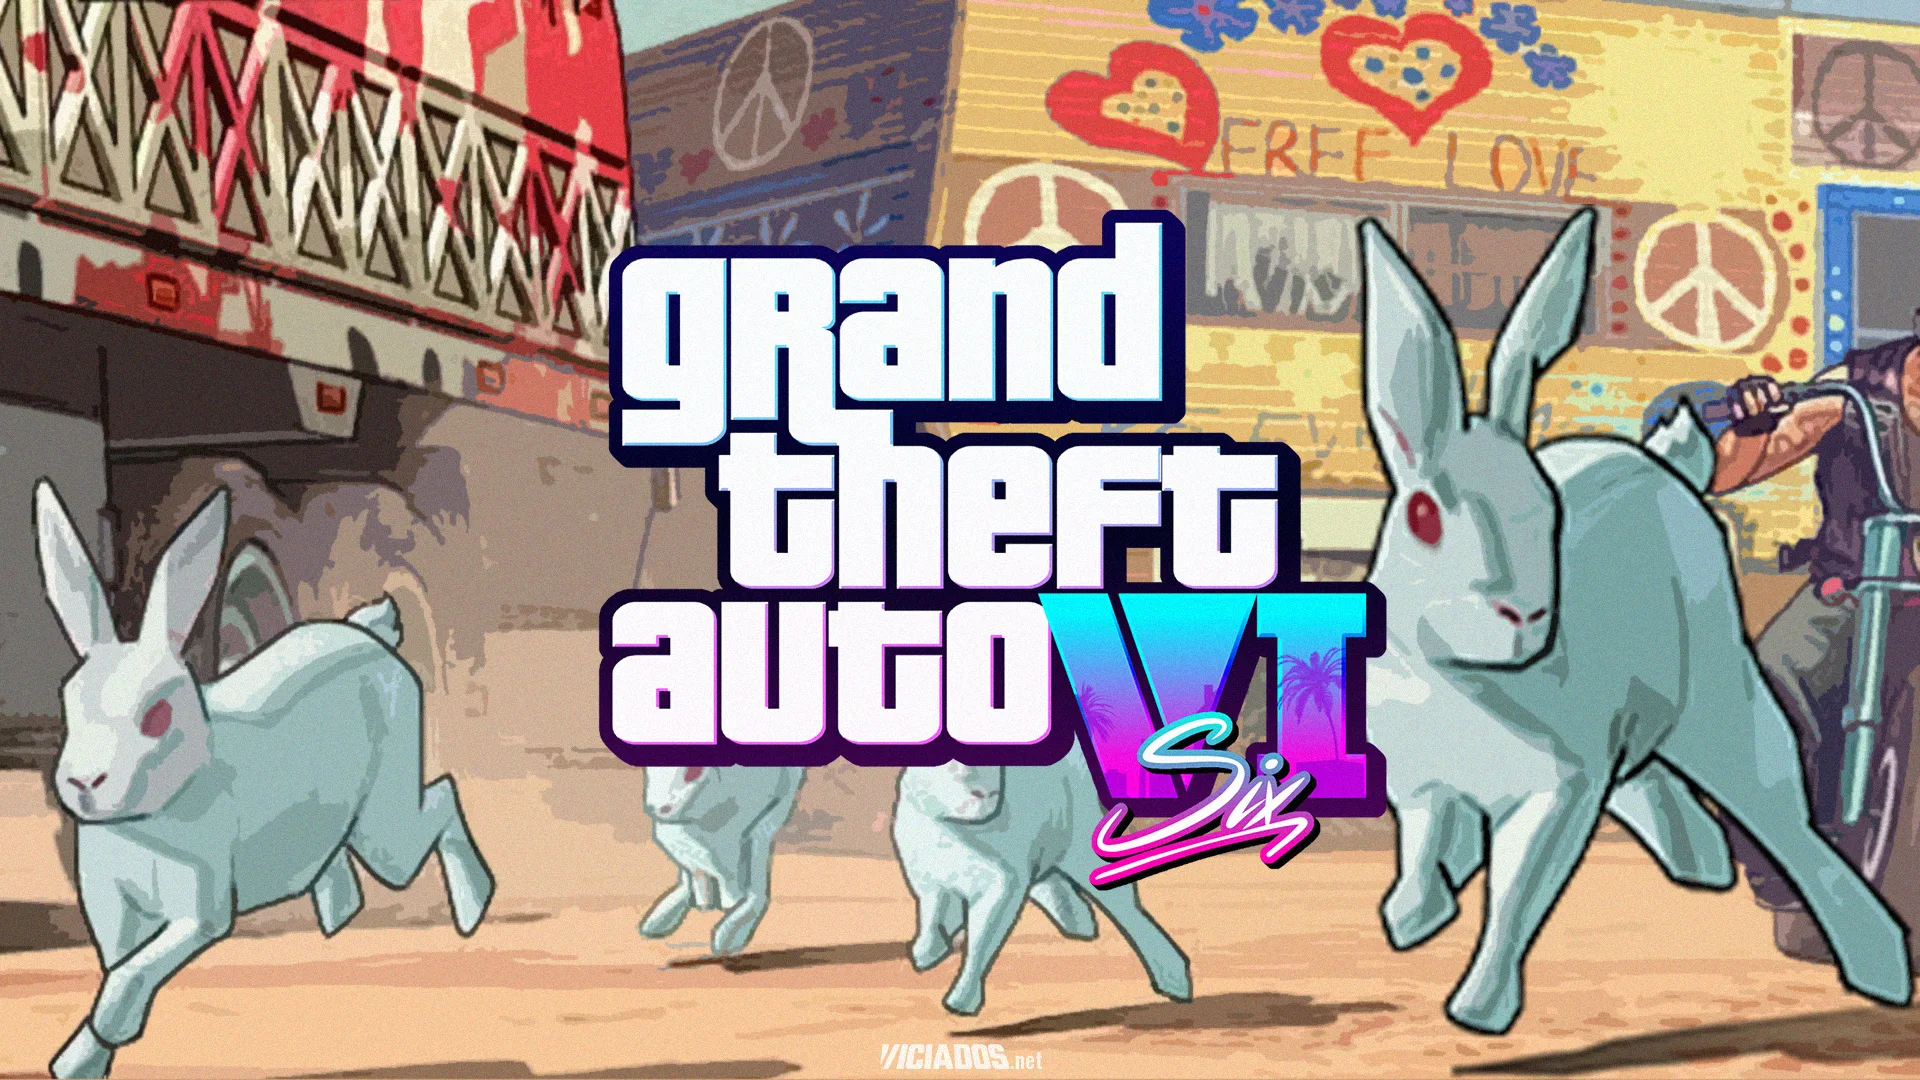 Diversas imagens de coelhos começaram a aparecer em diversas cidades da Florida, local onde GTA 6 (Grand Theft Auto VI) irá acontecer.